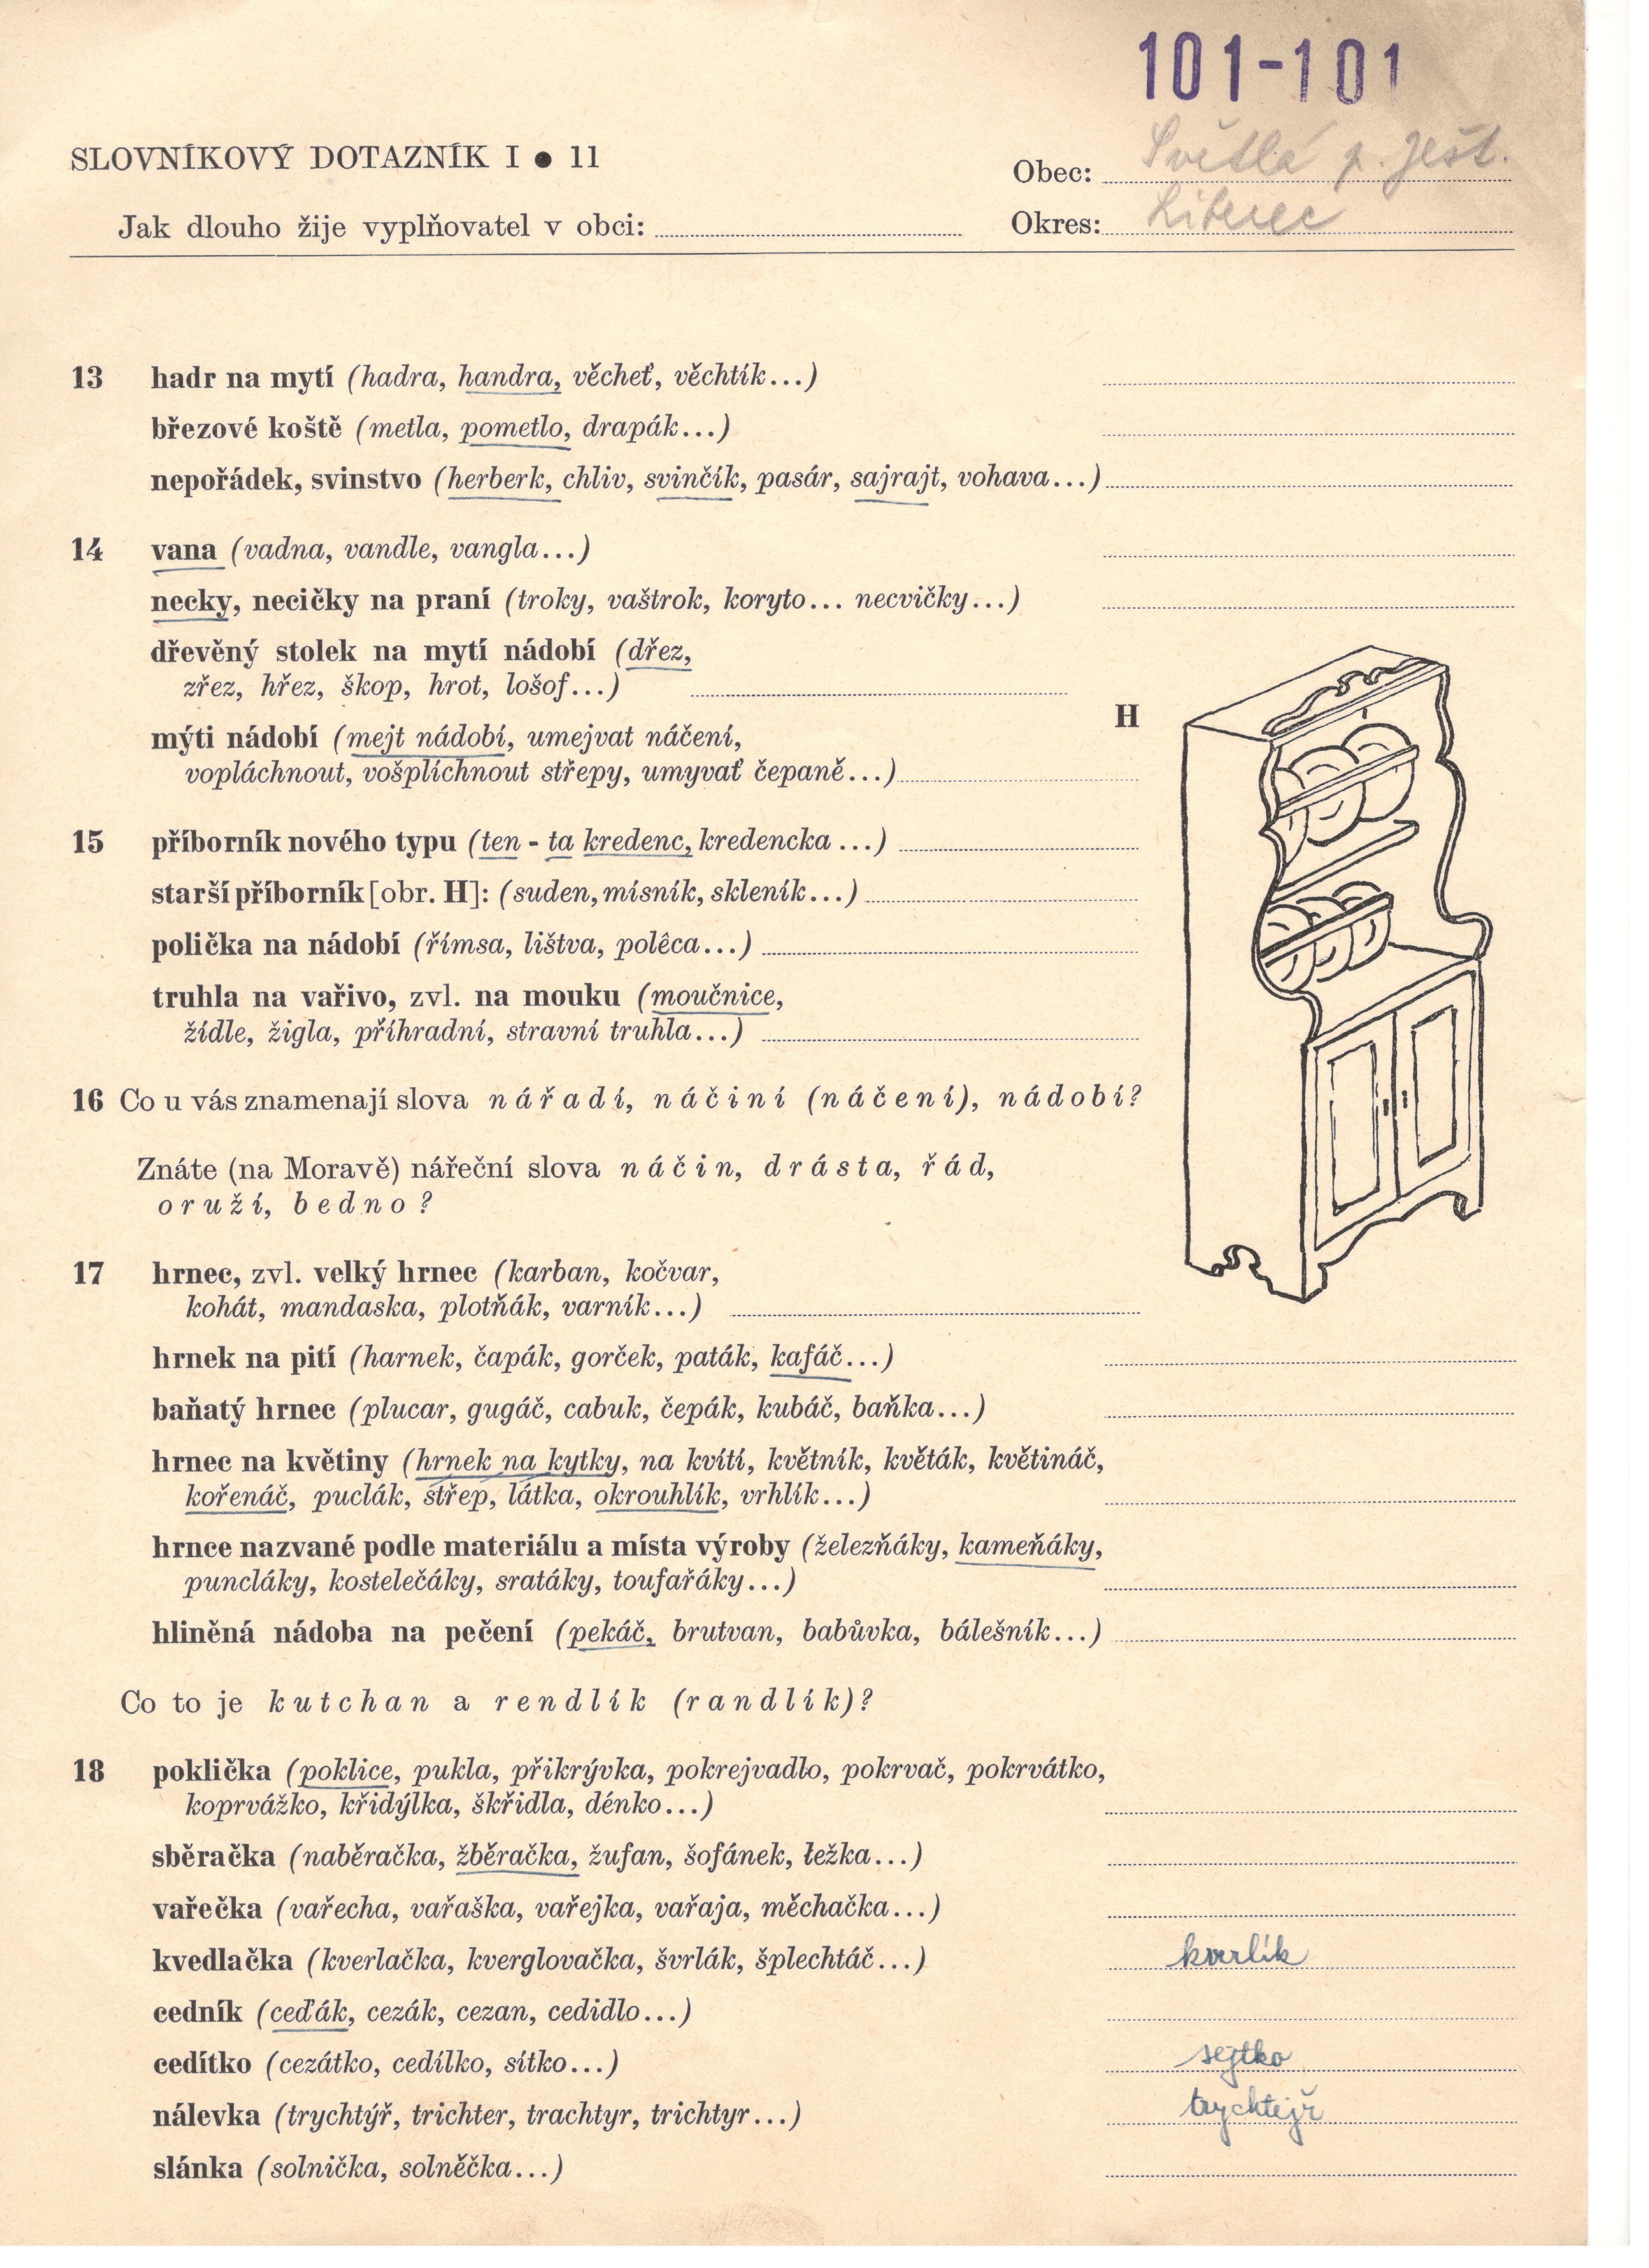 Ukázka Slovníkového dotazníku pro nářečí českého jazyka (část I, 1954; část II, 1958)